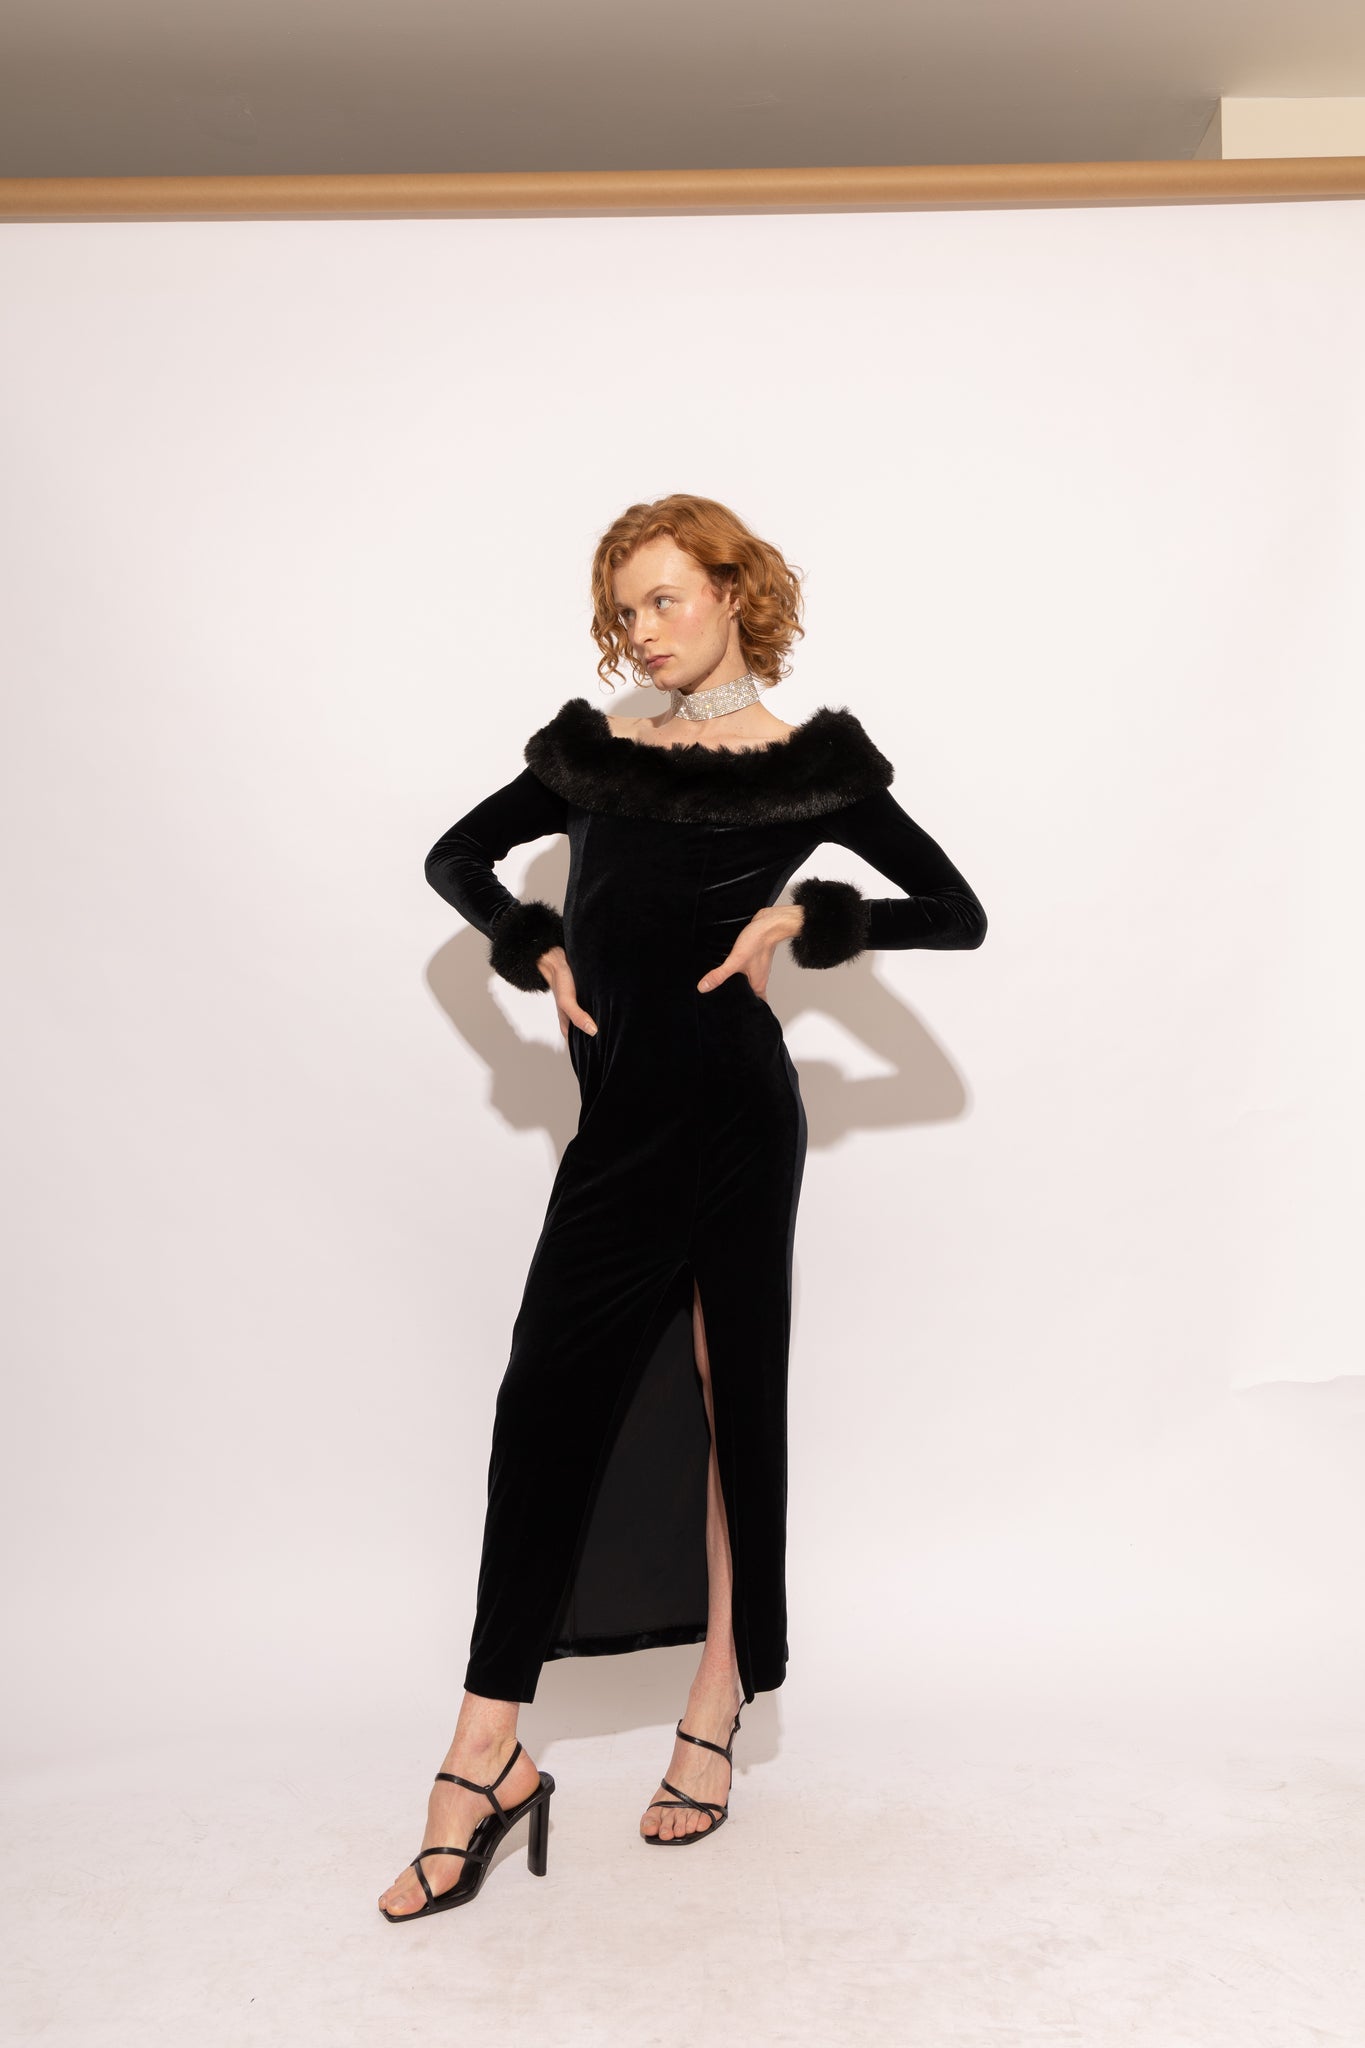 Stretch Velvet and Fur Trimmed Black Dress (S)